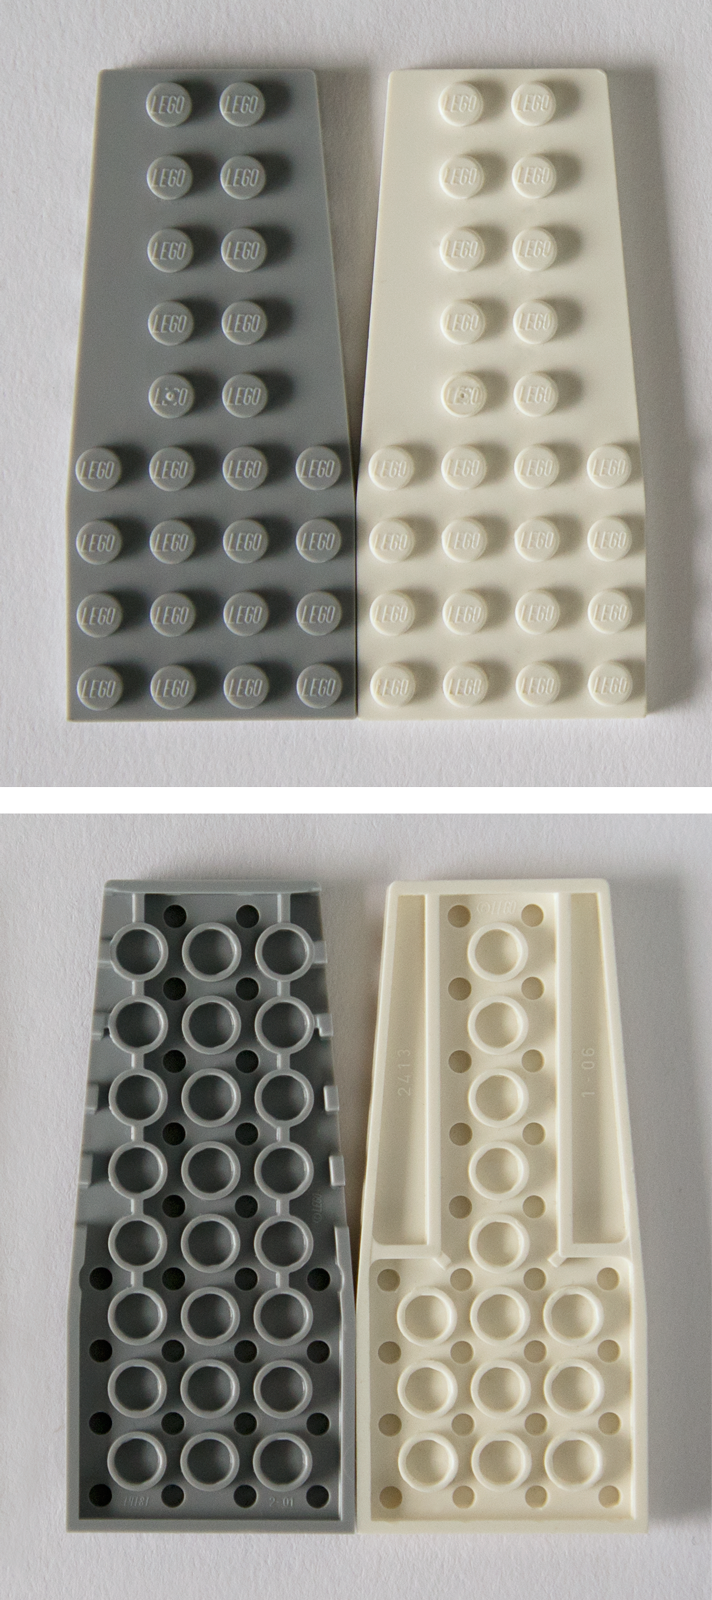 Details about   LEGO Parts Pieces Lot ~ Wedge Plate 8 x 3 LEFT ~ Part# SOLID COLORS 50305 